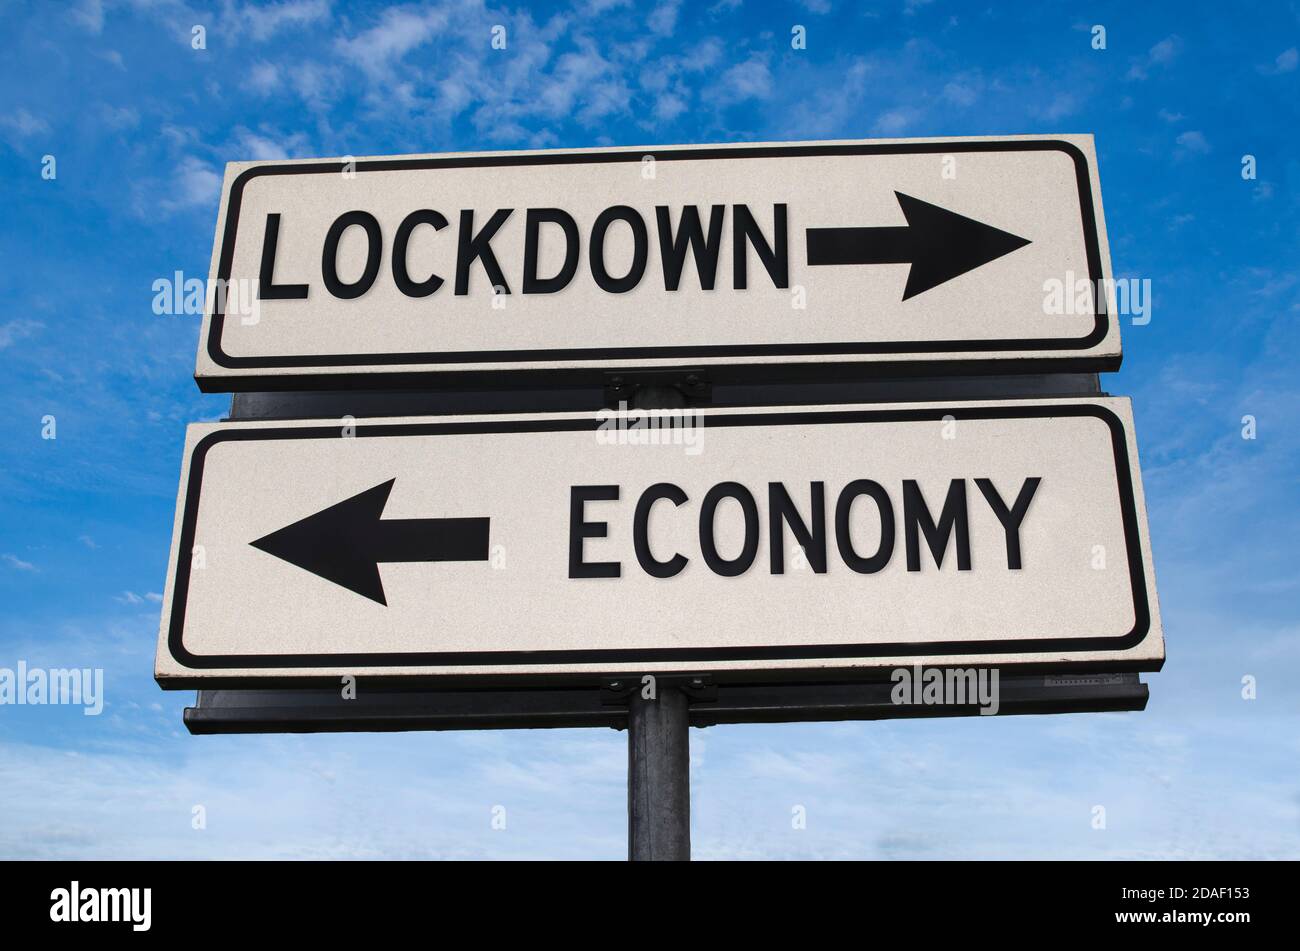 Lockdown und Wirtschaft weiß zwei Pfeile Zeichen auf Metallstange. Richtungsstraße. Kreuzung Straßenschild, zwei Pfeile vor blauem Himmel Hintergrund. Zwei-Wege-Roa Stockfoto